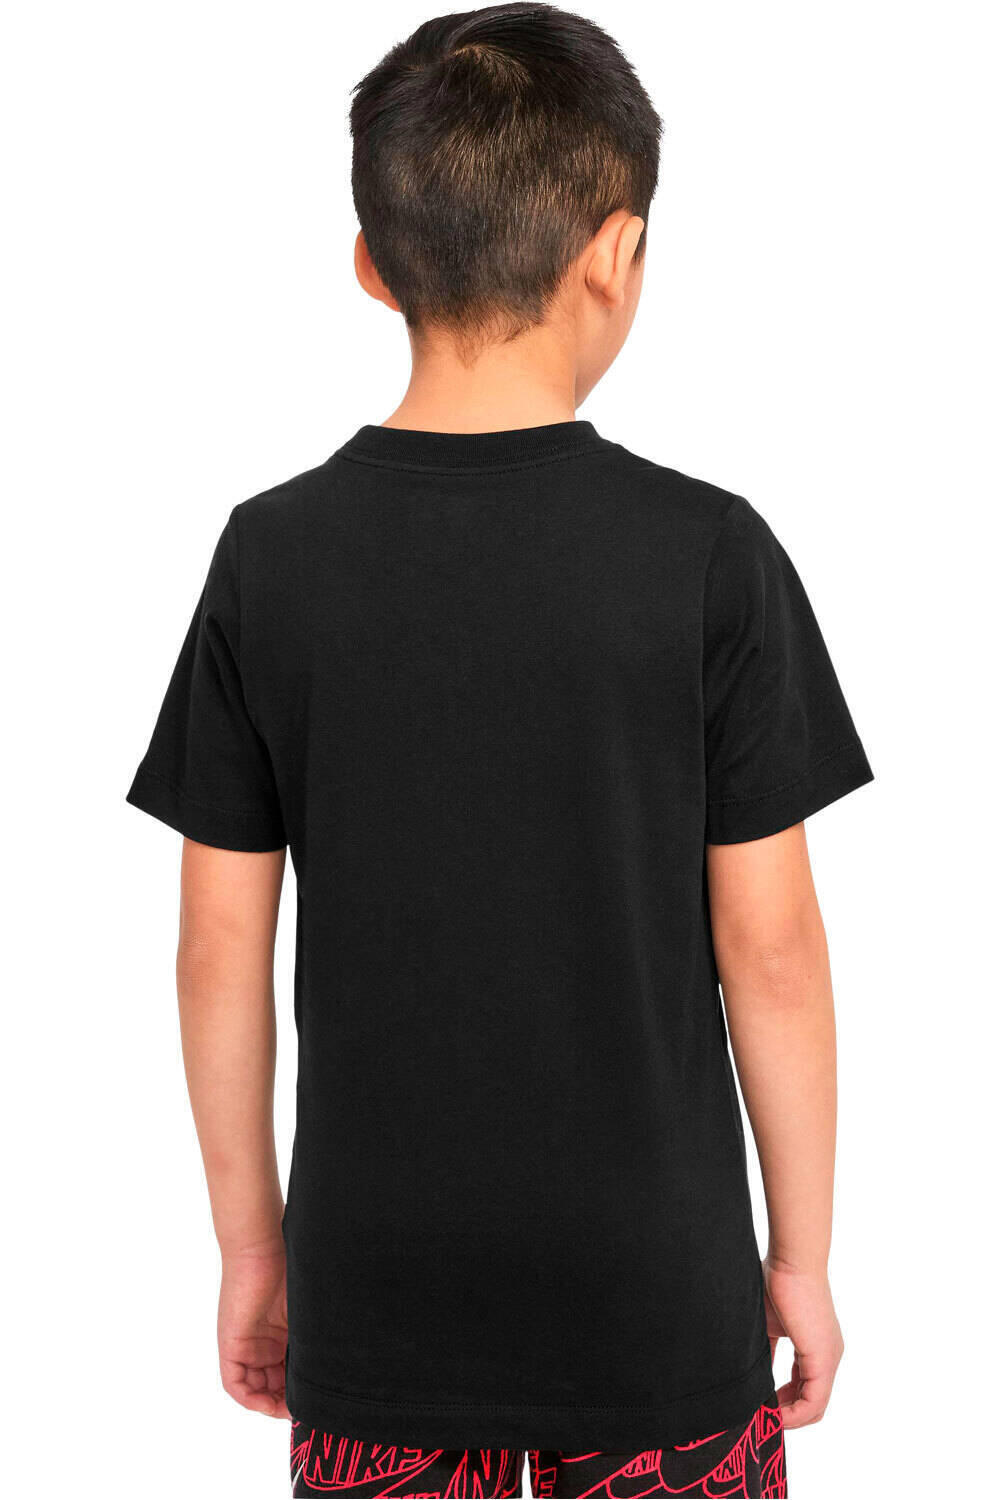 Nike camiseta manga corta niño B NSW TEE FUTURA BOXY SP22 vista trasera